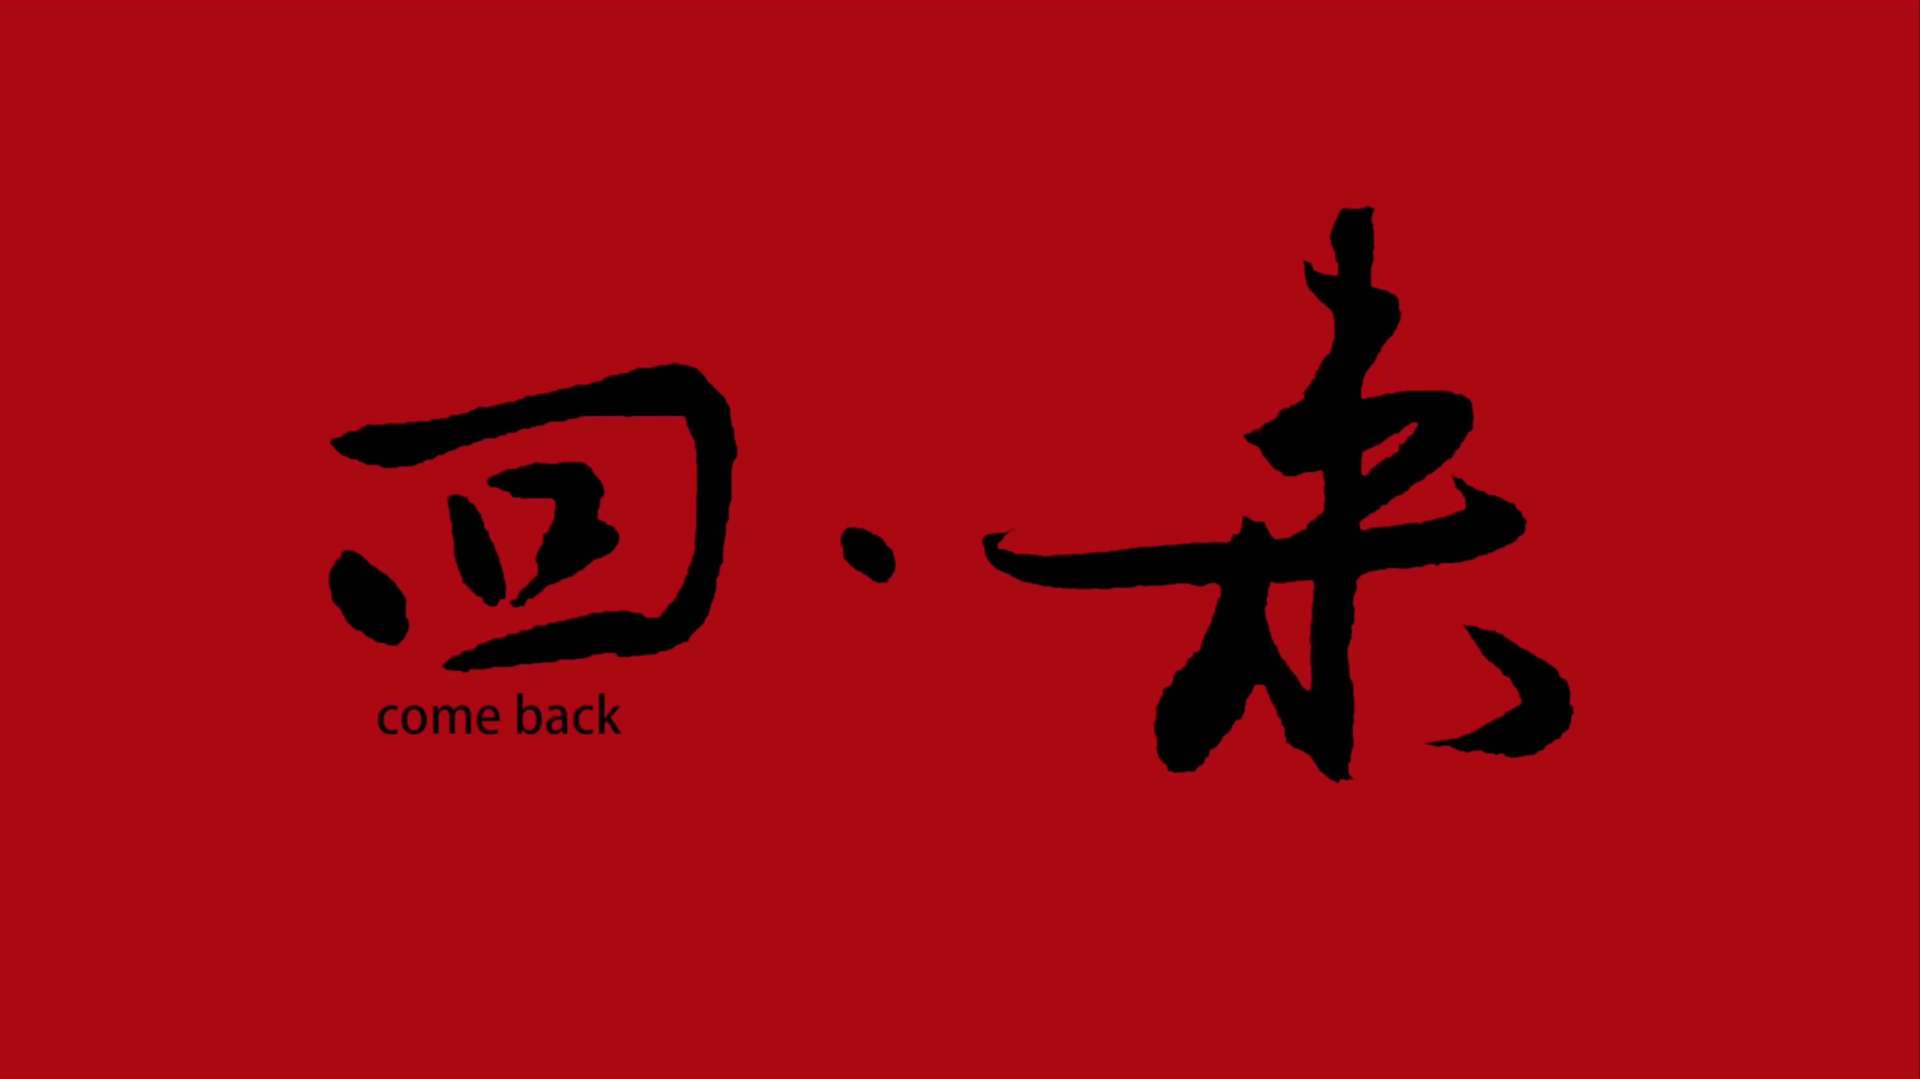 《回来》——优酷 CNY 概念片